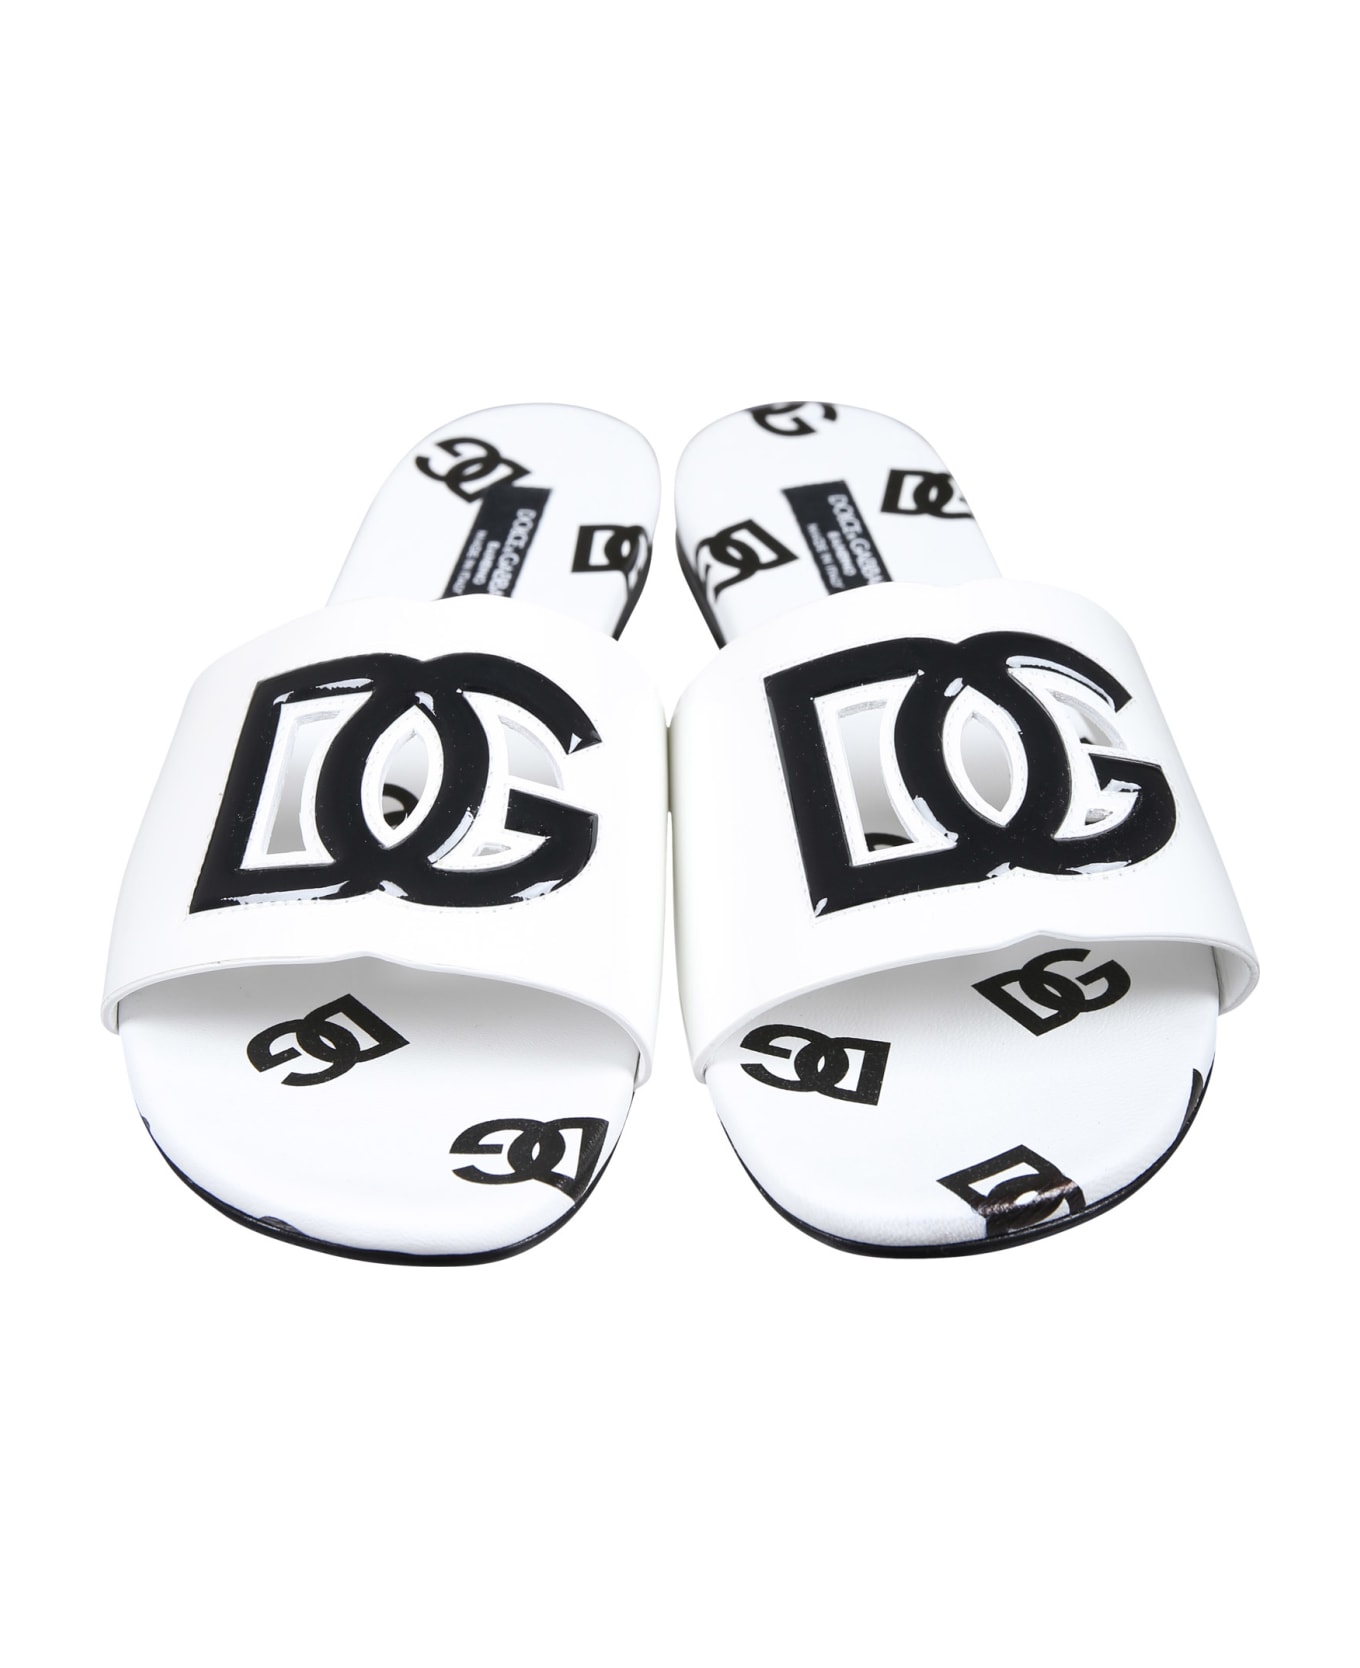 Dolce & Gabbana White Slippers For Girl With Logo - White シューズ